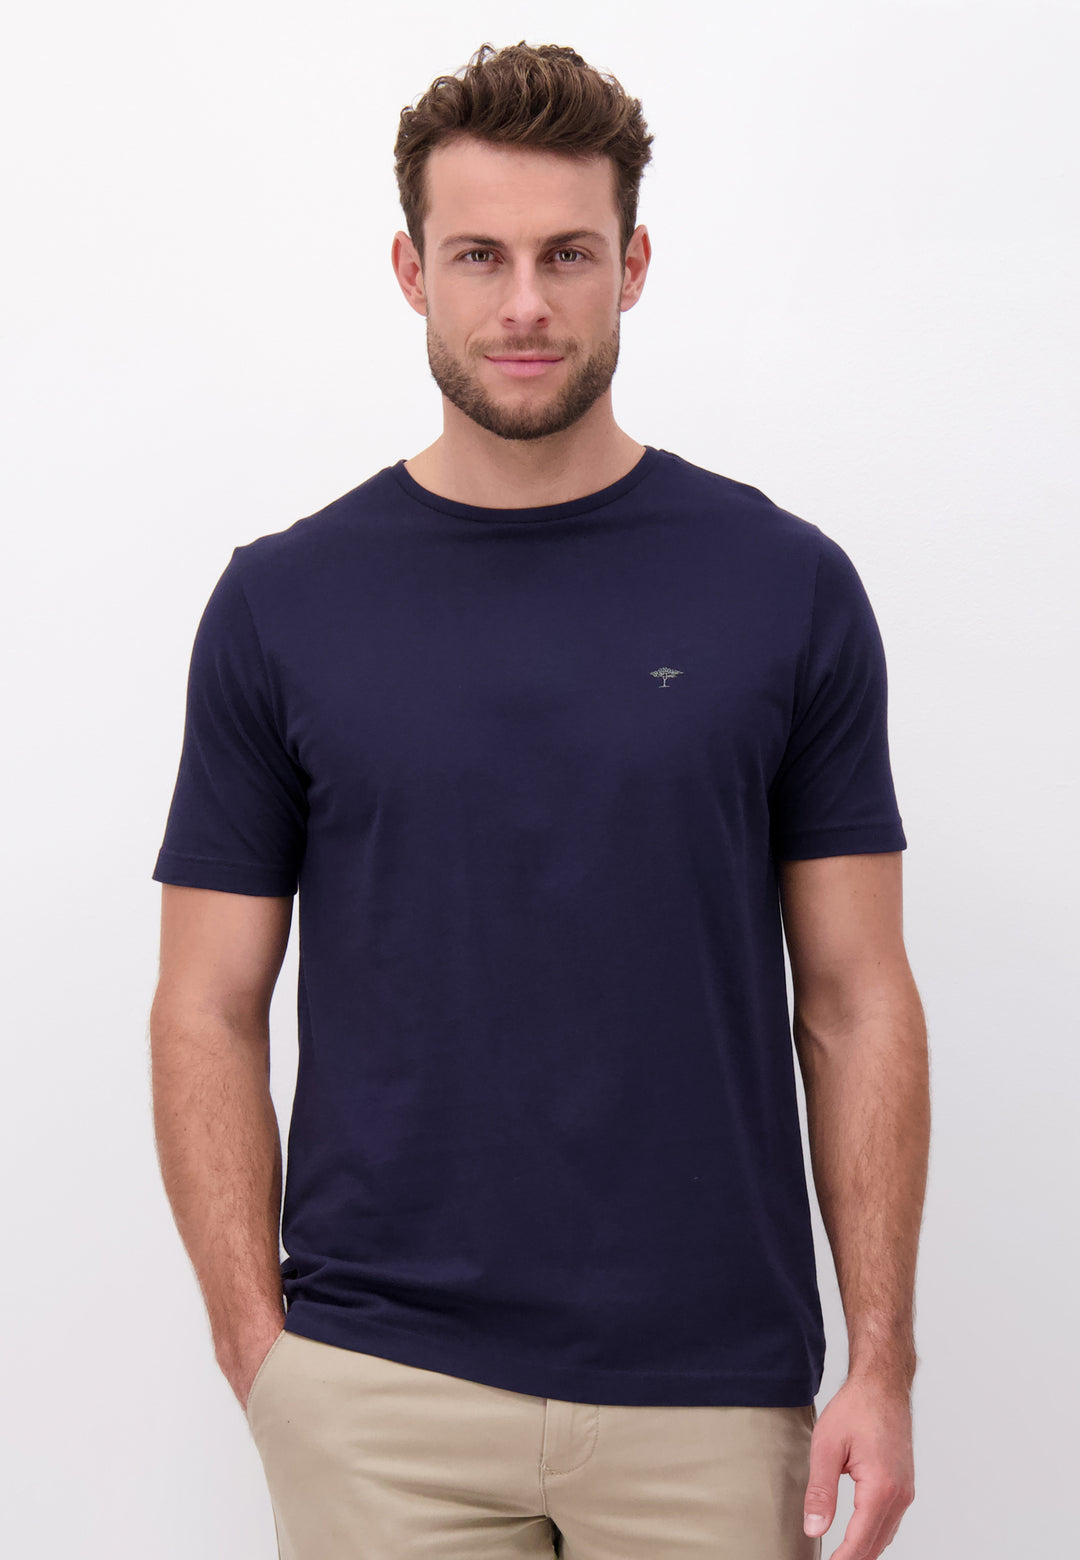 Offizieller T-shirt Shop with round Online | neck – FYNCH-HATTON